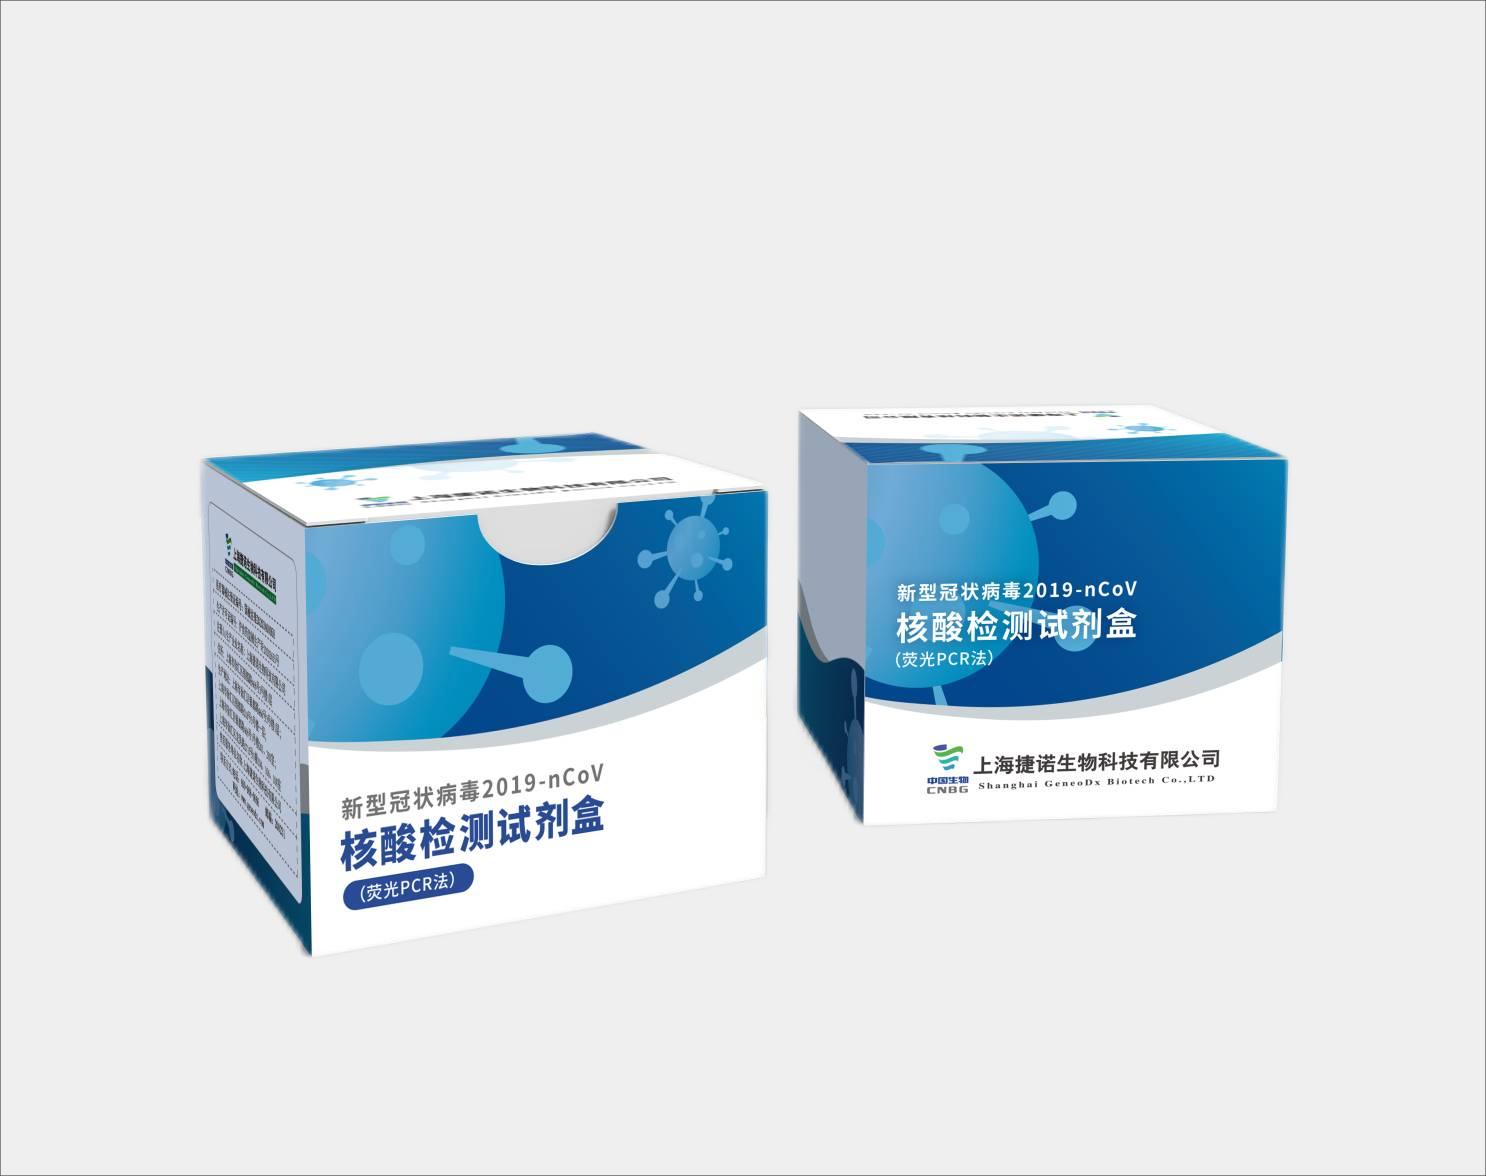 【捷诺】新型冠状病毒2019-nCoV核酸检测试剂盒（荧光PCR法）